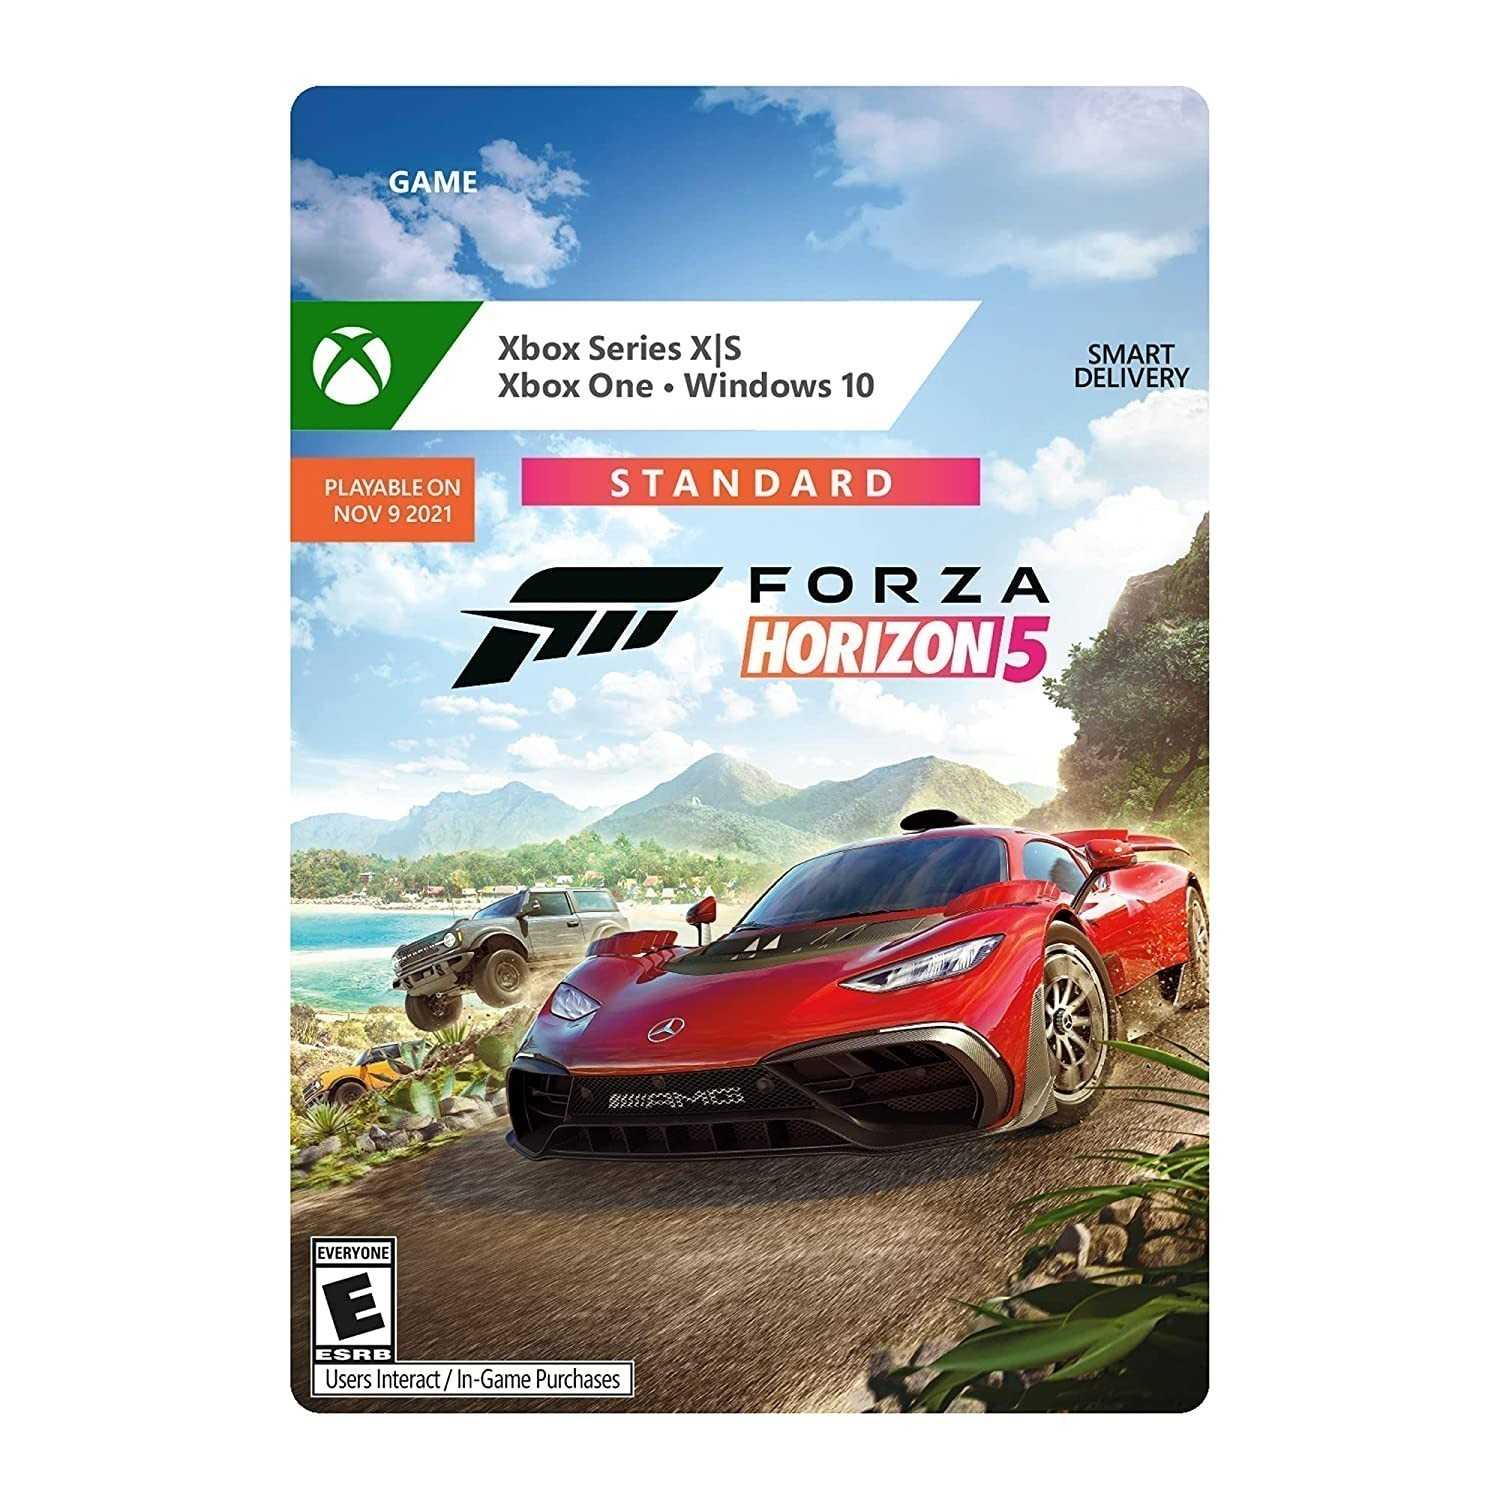 Форза хбокс. Xbox Series s Forza Horizon 5. Диск Форза 5 на Xbox. Диск Forza Horizon 5 на Xbox Series s. Форза 5 на Xbox Series s.